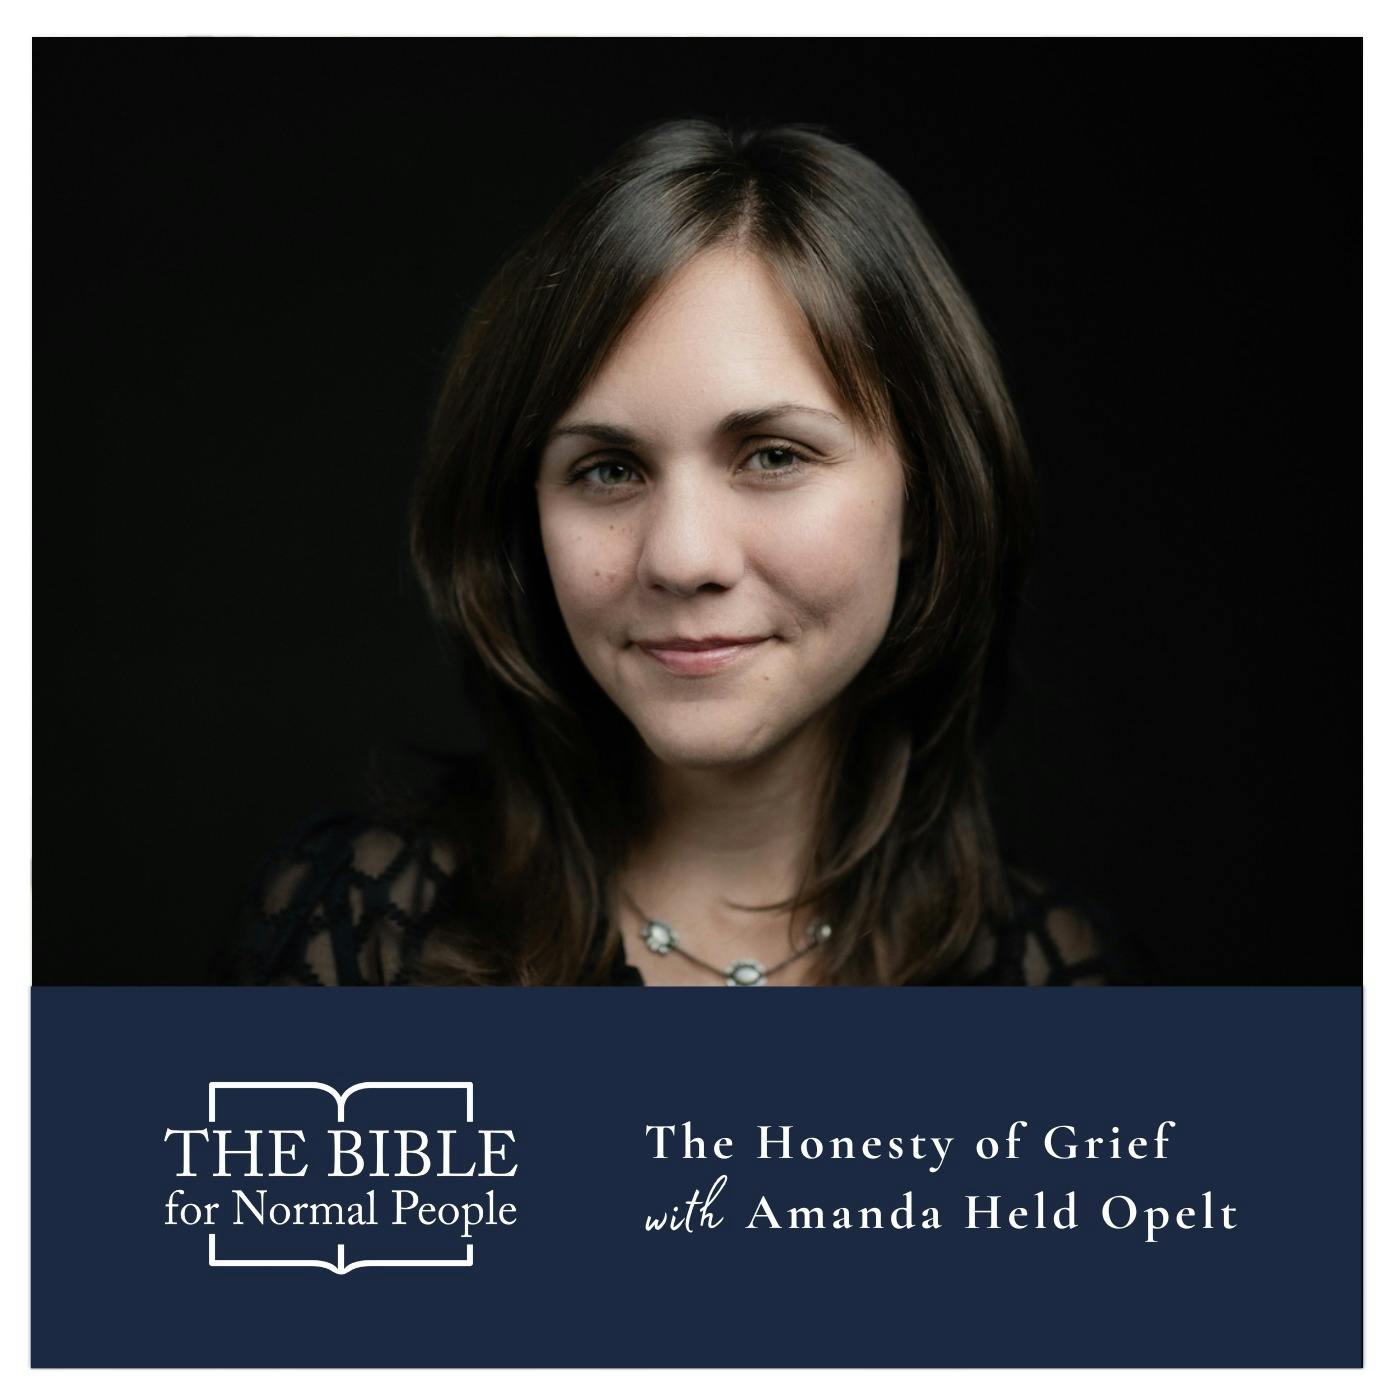 Episode 213: Amanda Held Opelt - The Honesty of Grief